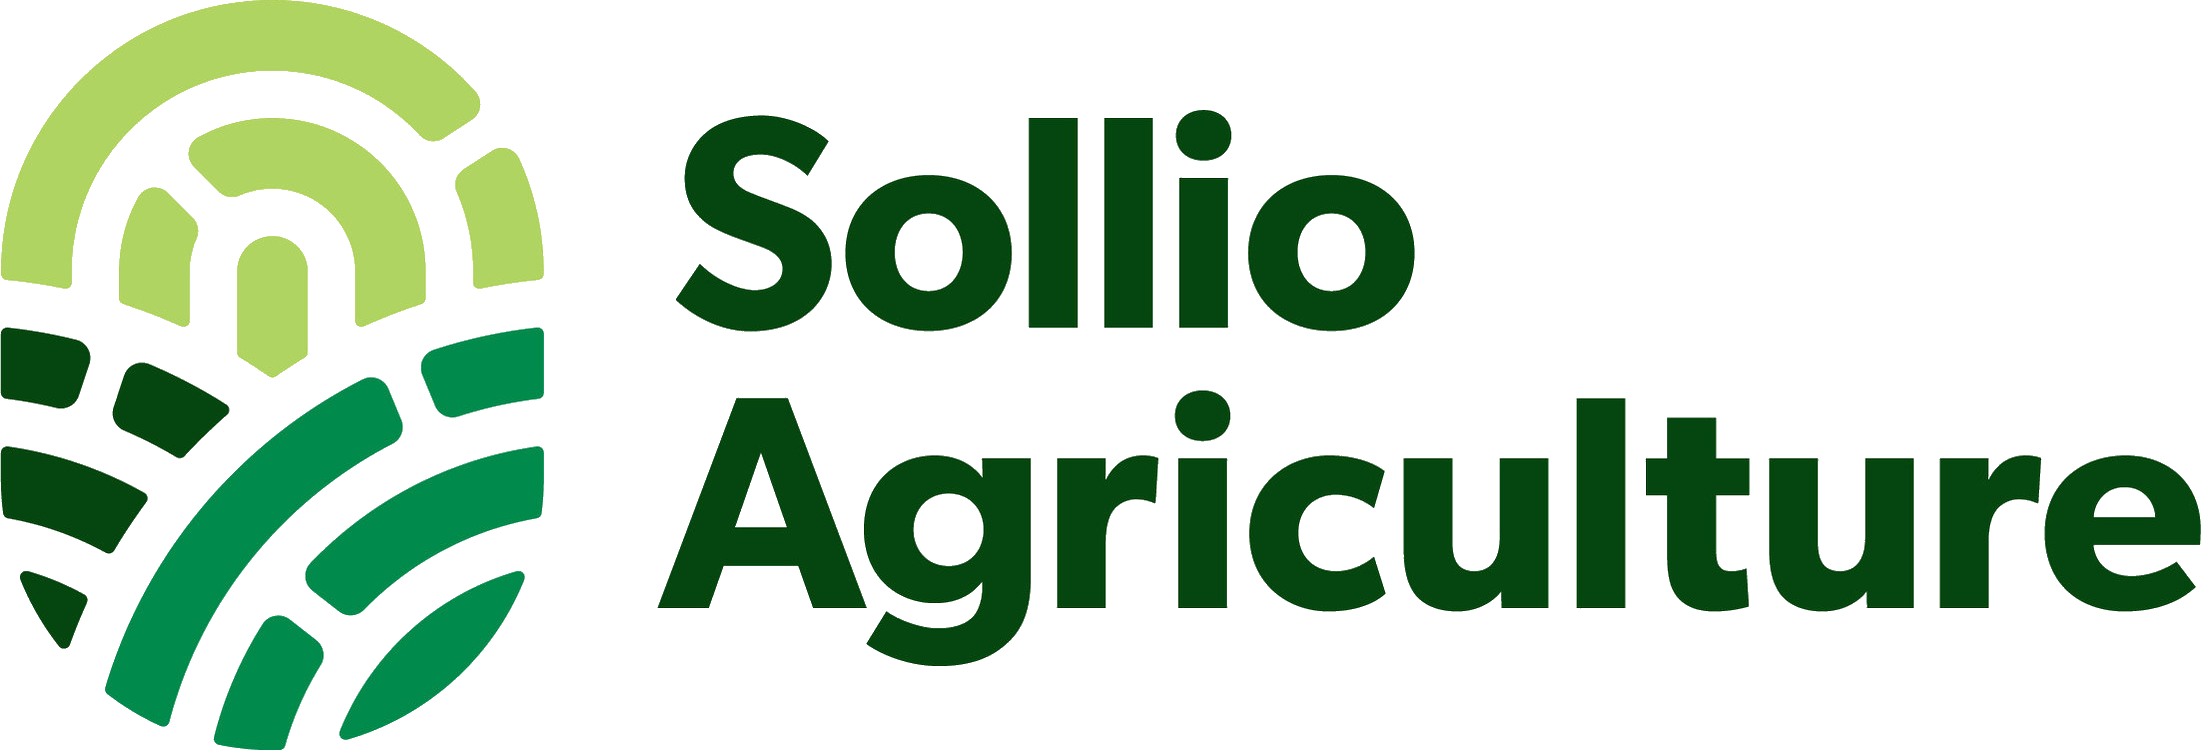 'Solio Agriculture